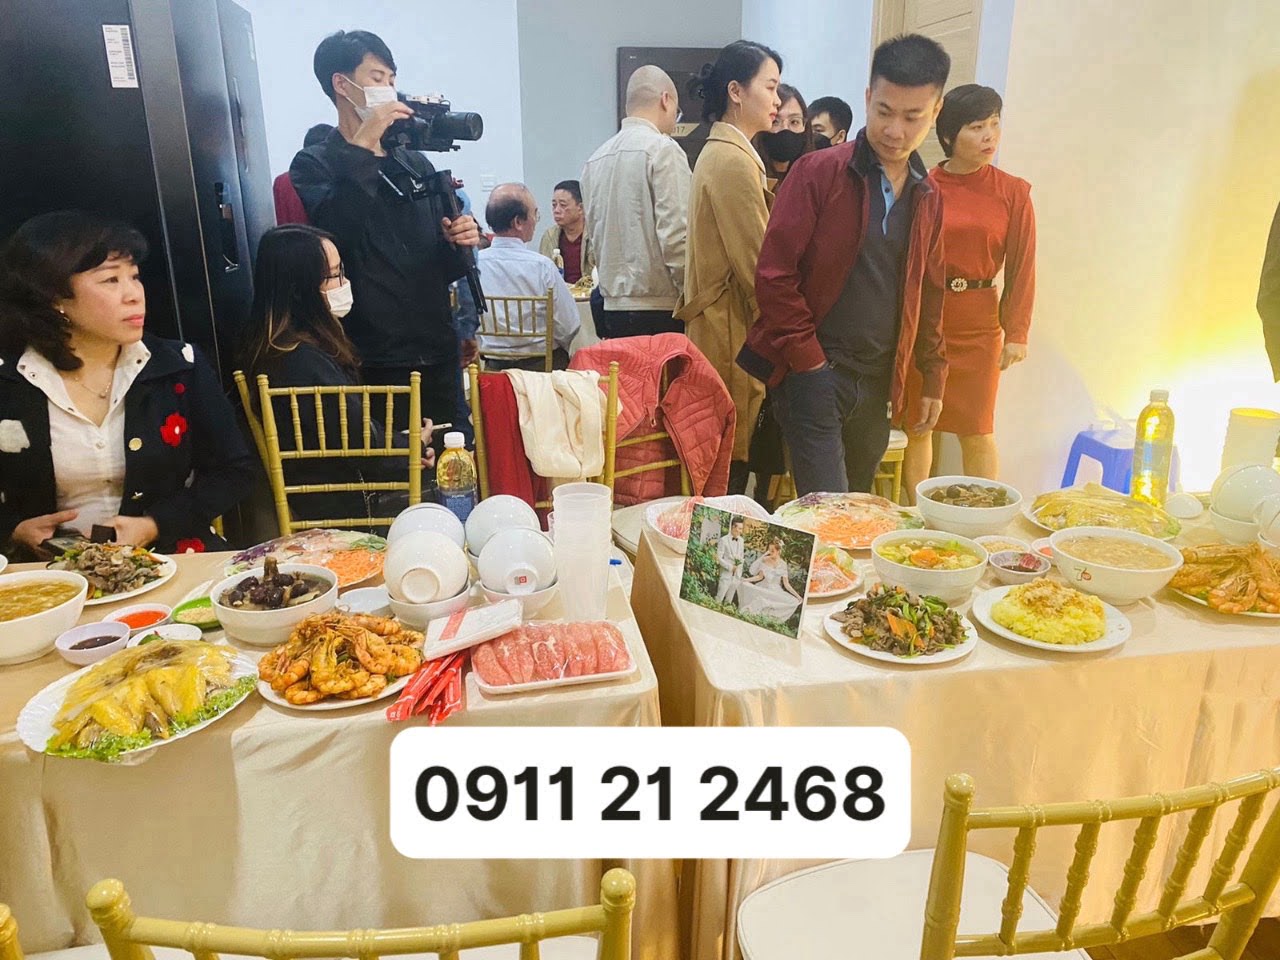 Phục vụ tiệc ăn hỏi tại nhà ở Hà Nội